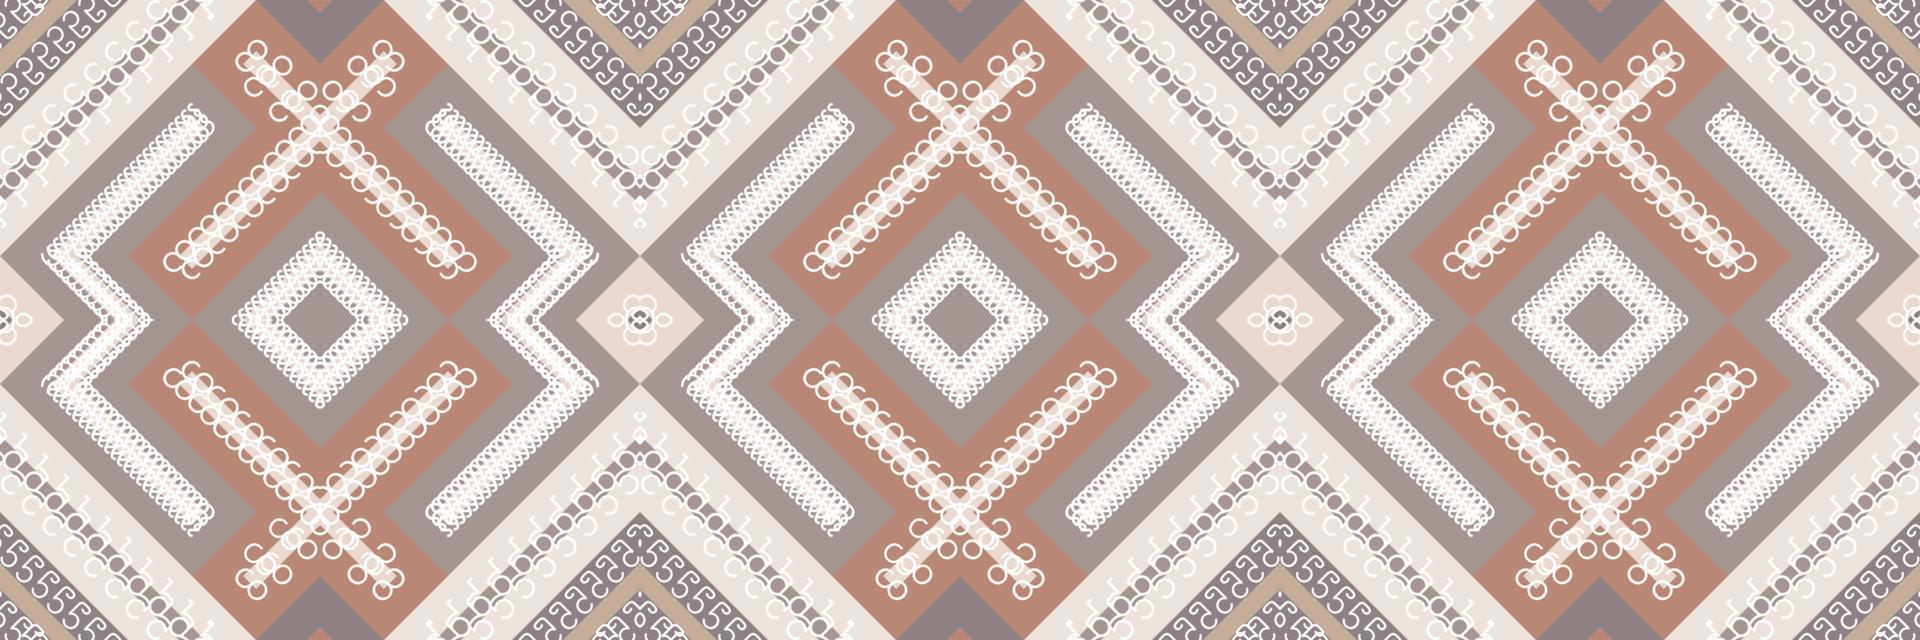 motif ethnique tribal. tapis à motifs traditionnels c'est un motif créé en combinant des formes géométriques. conception pour l'impression. utilisation dans l'industrie de la mode. vecteur